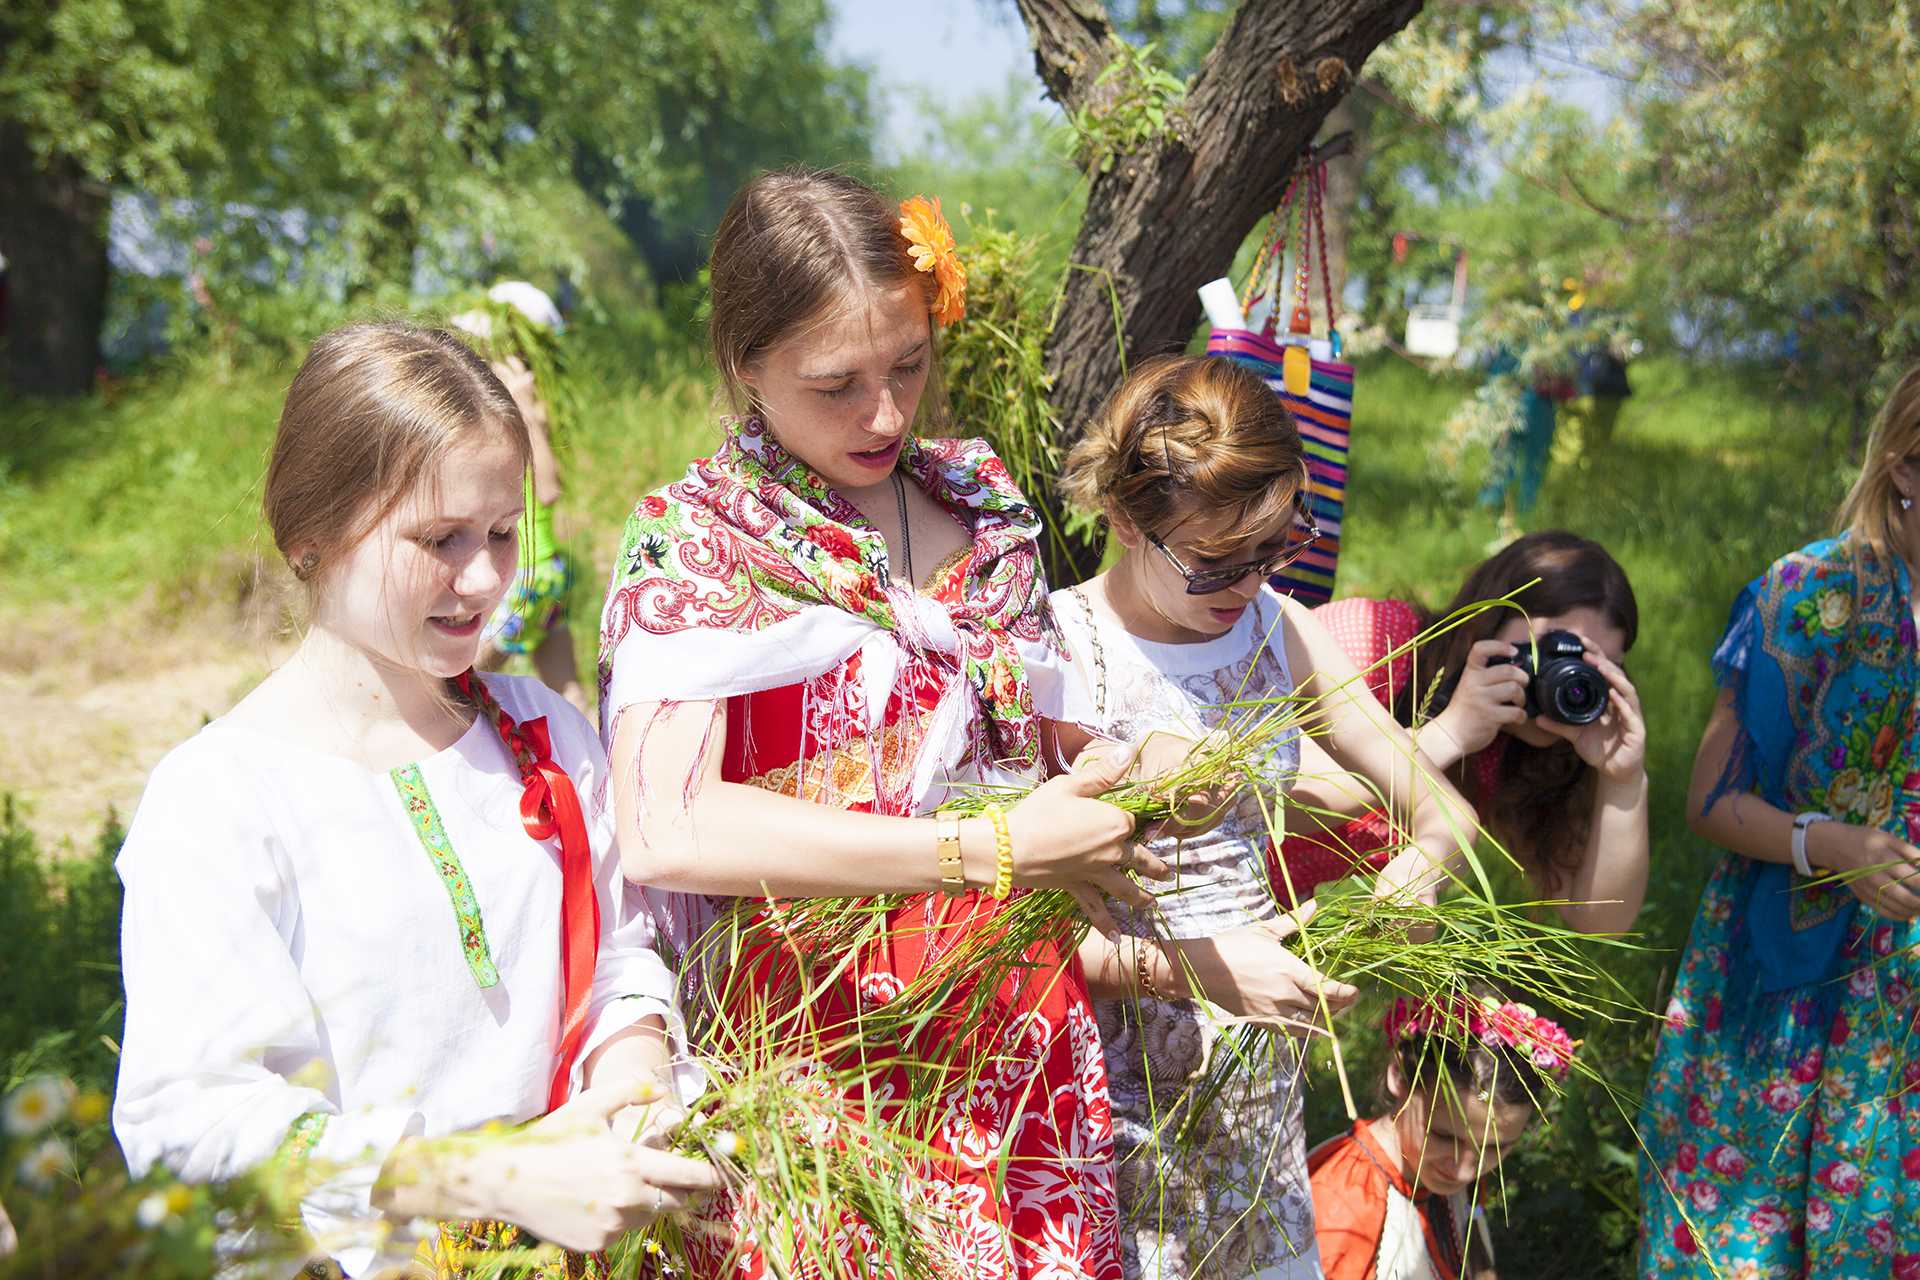 История, традиции и обряды славянского праздника семик или зеленые святки, отмечаемого 4 июня 2020 года